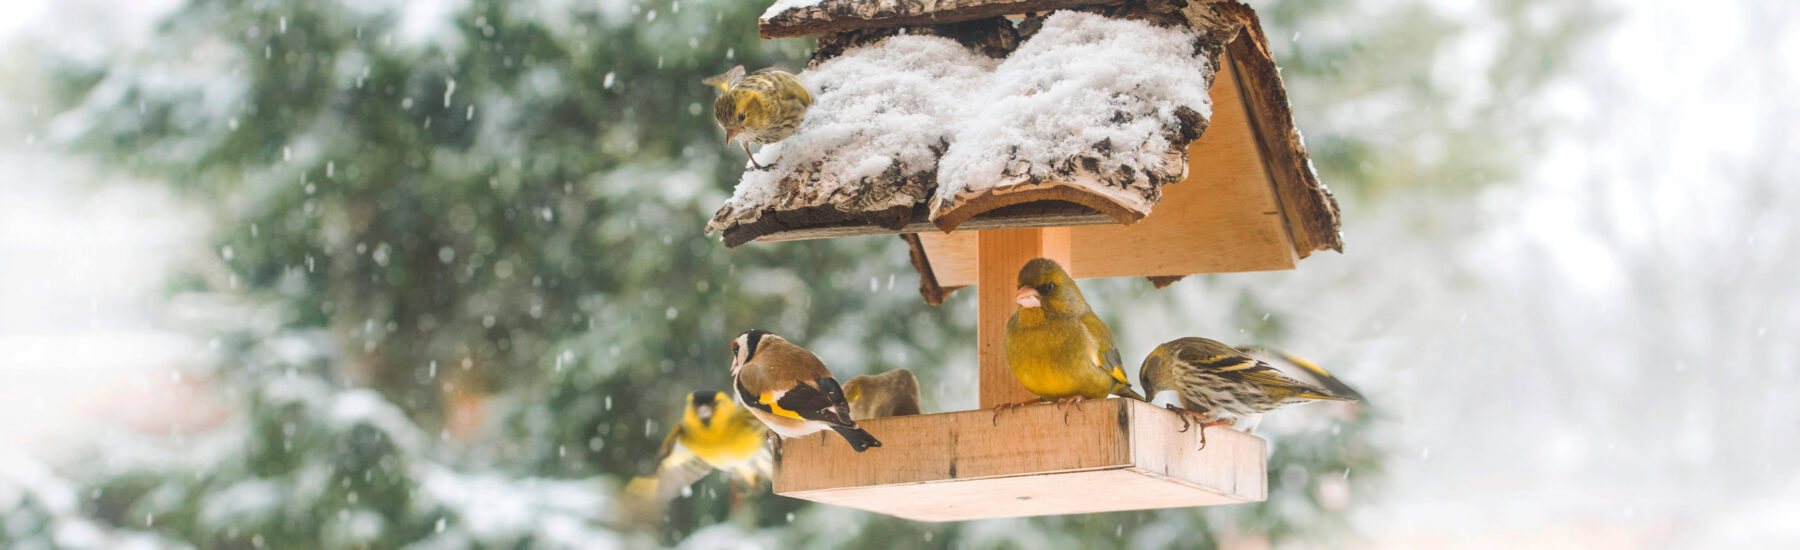 Boules de graisse, fruits, eau Comment bien nourrir les oiseaux pendant  l'hiver ?